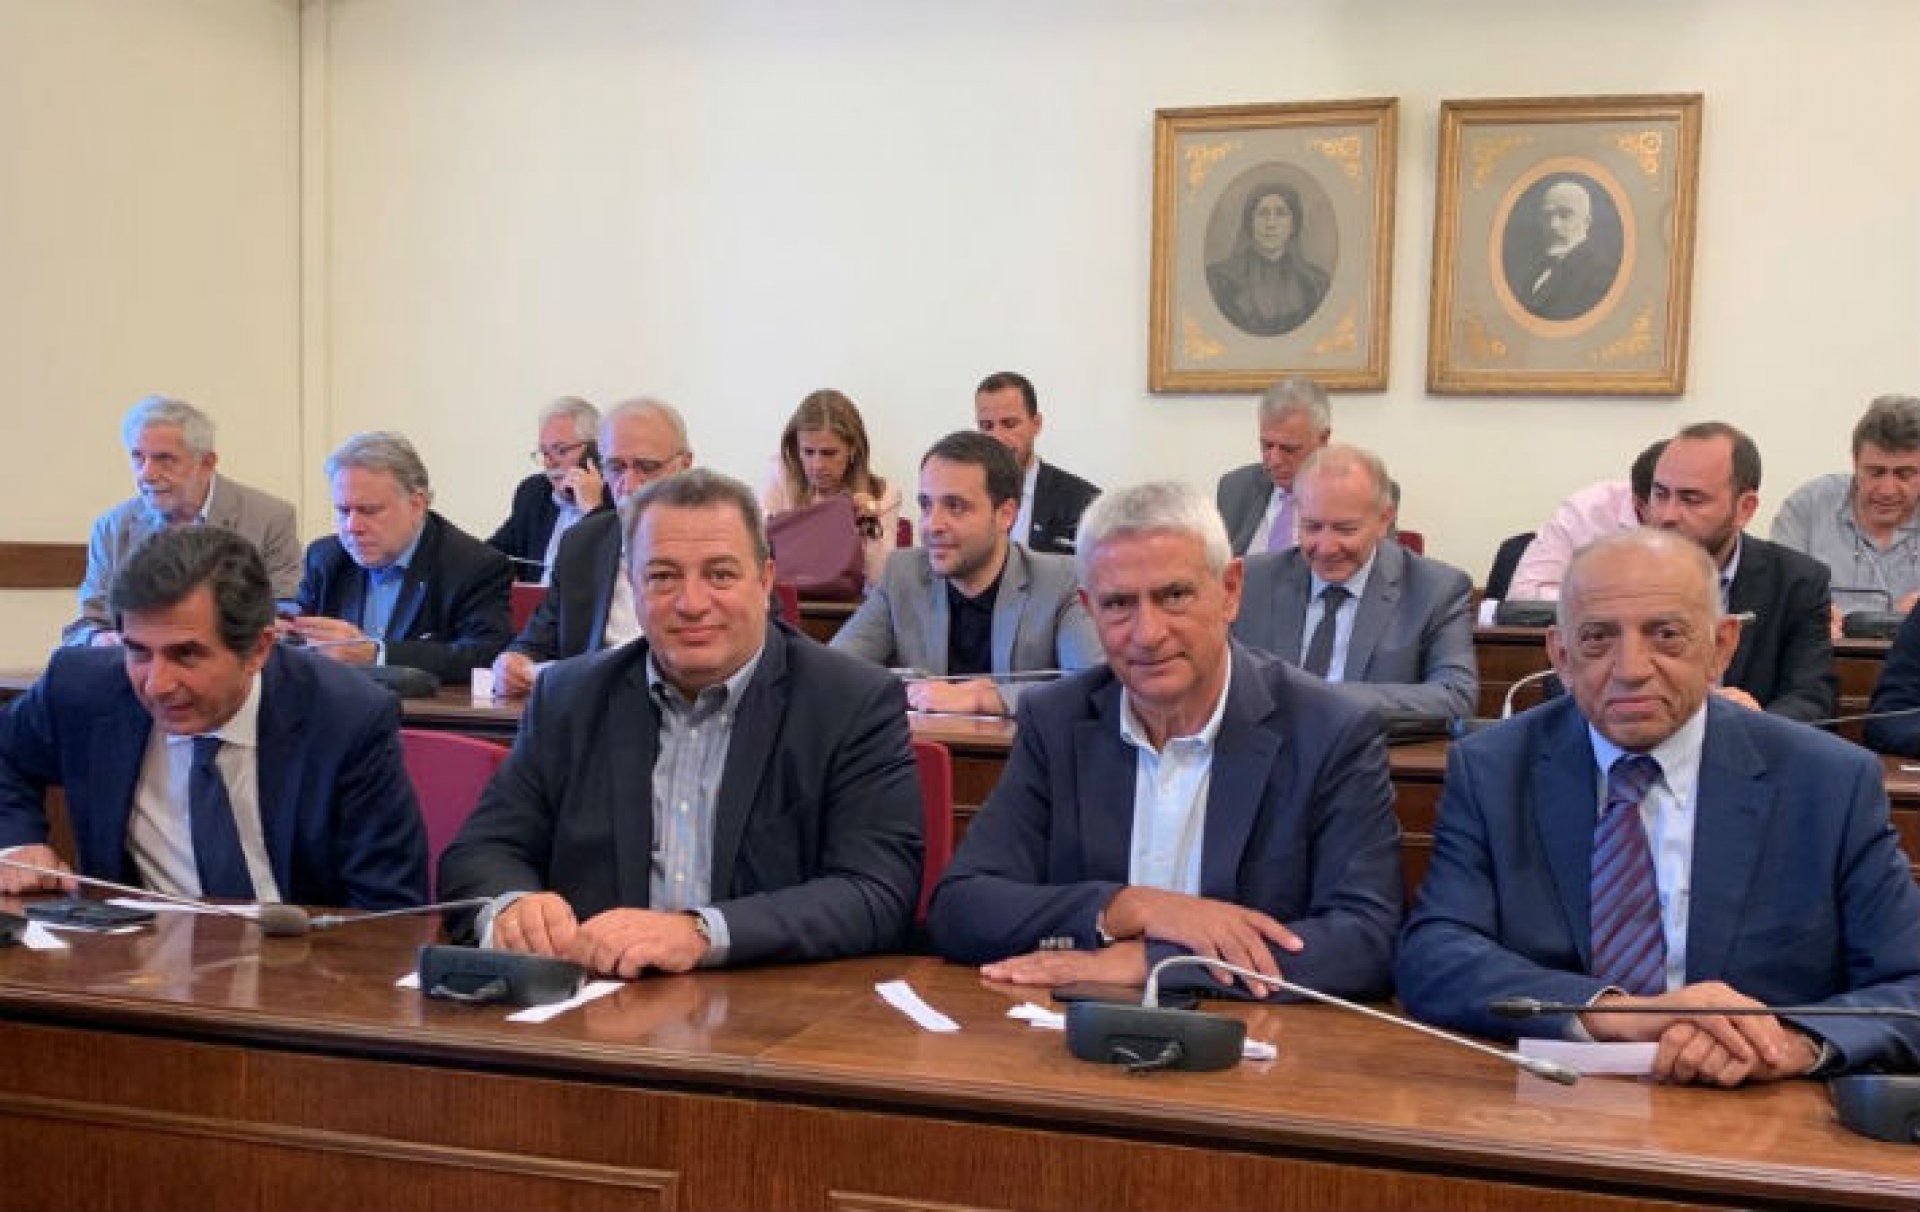 Еврипид Стилианидис (на фото второй слева направо) юрист, доцент права Европейского университета Кипра, адвокат Верховного суда Афин. В течение десяти раз подряд избирался депутатом, представляющим Родопи в парламенте Греции, с 2000 года по сегодняшний день